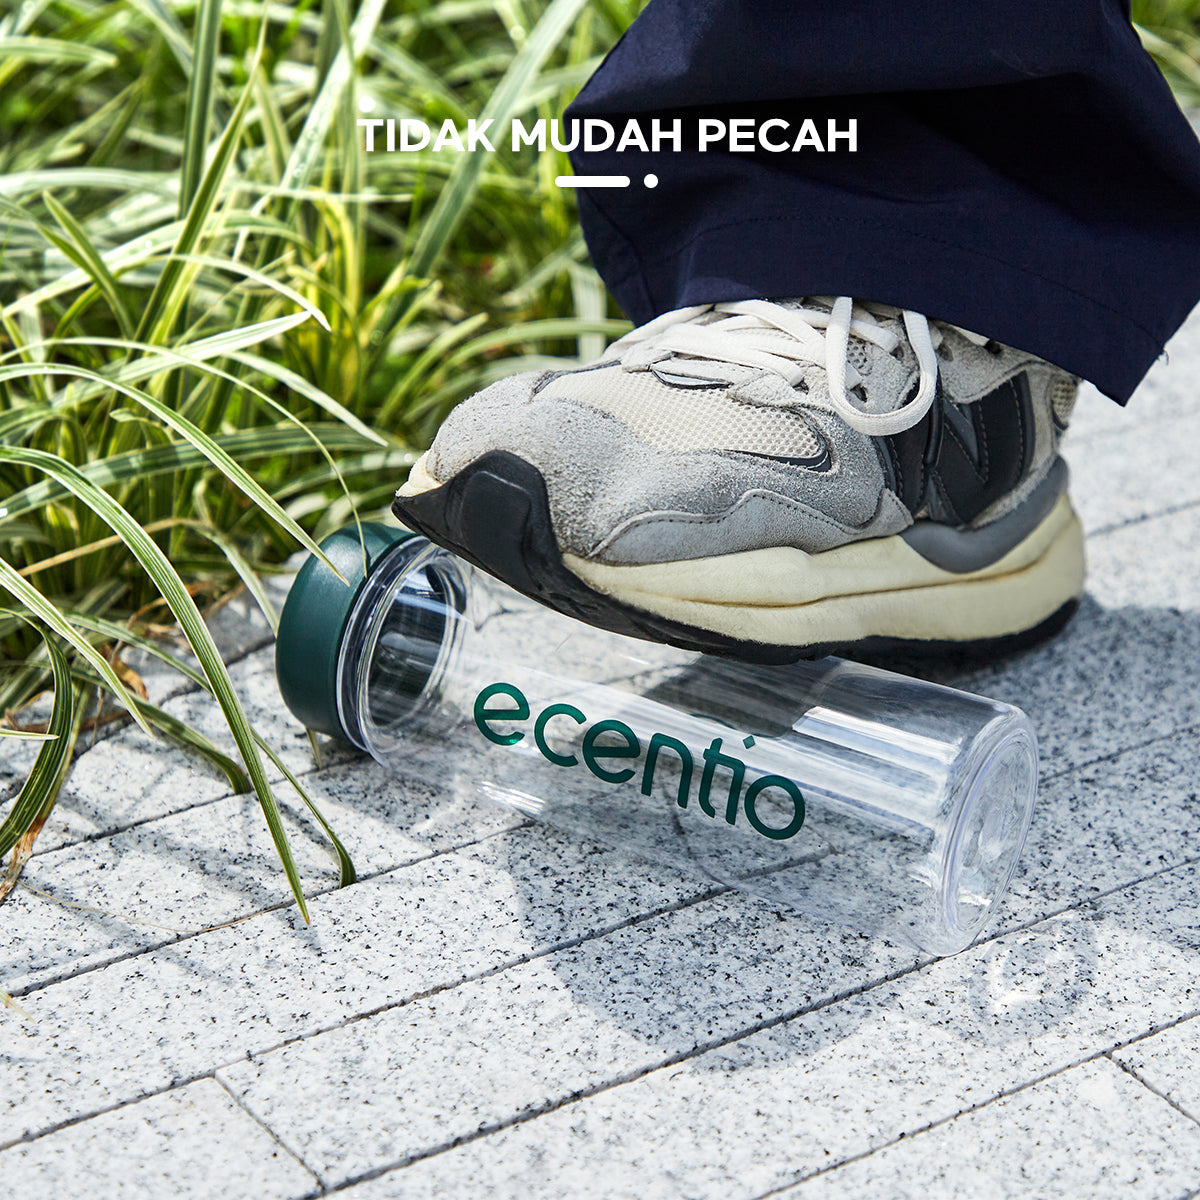 ecentio Tumbler bening Botol Air Minum 500ml - ecentio